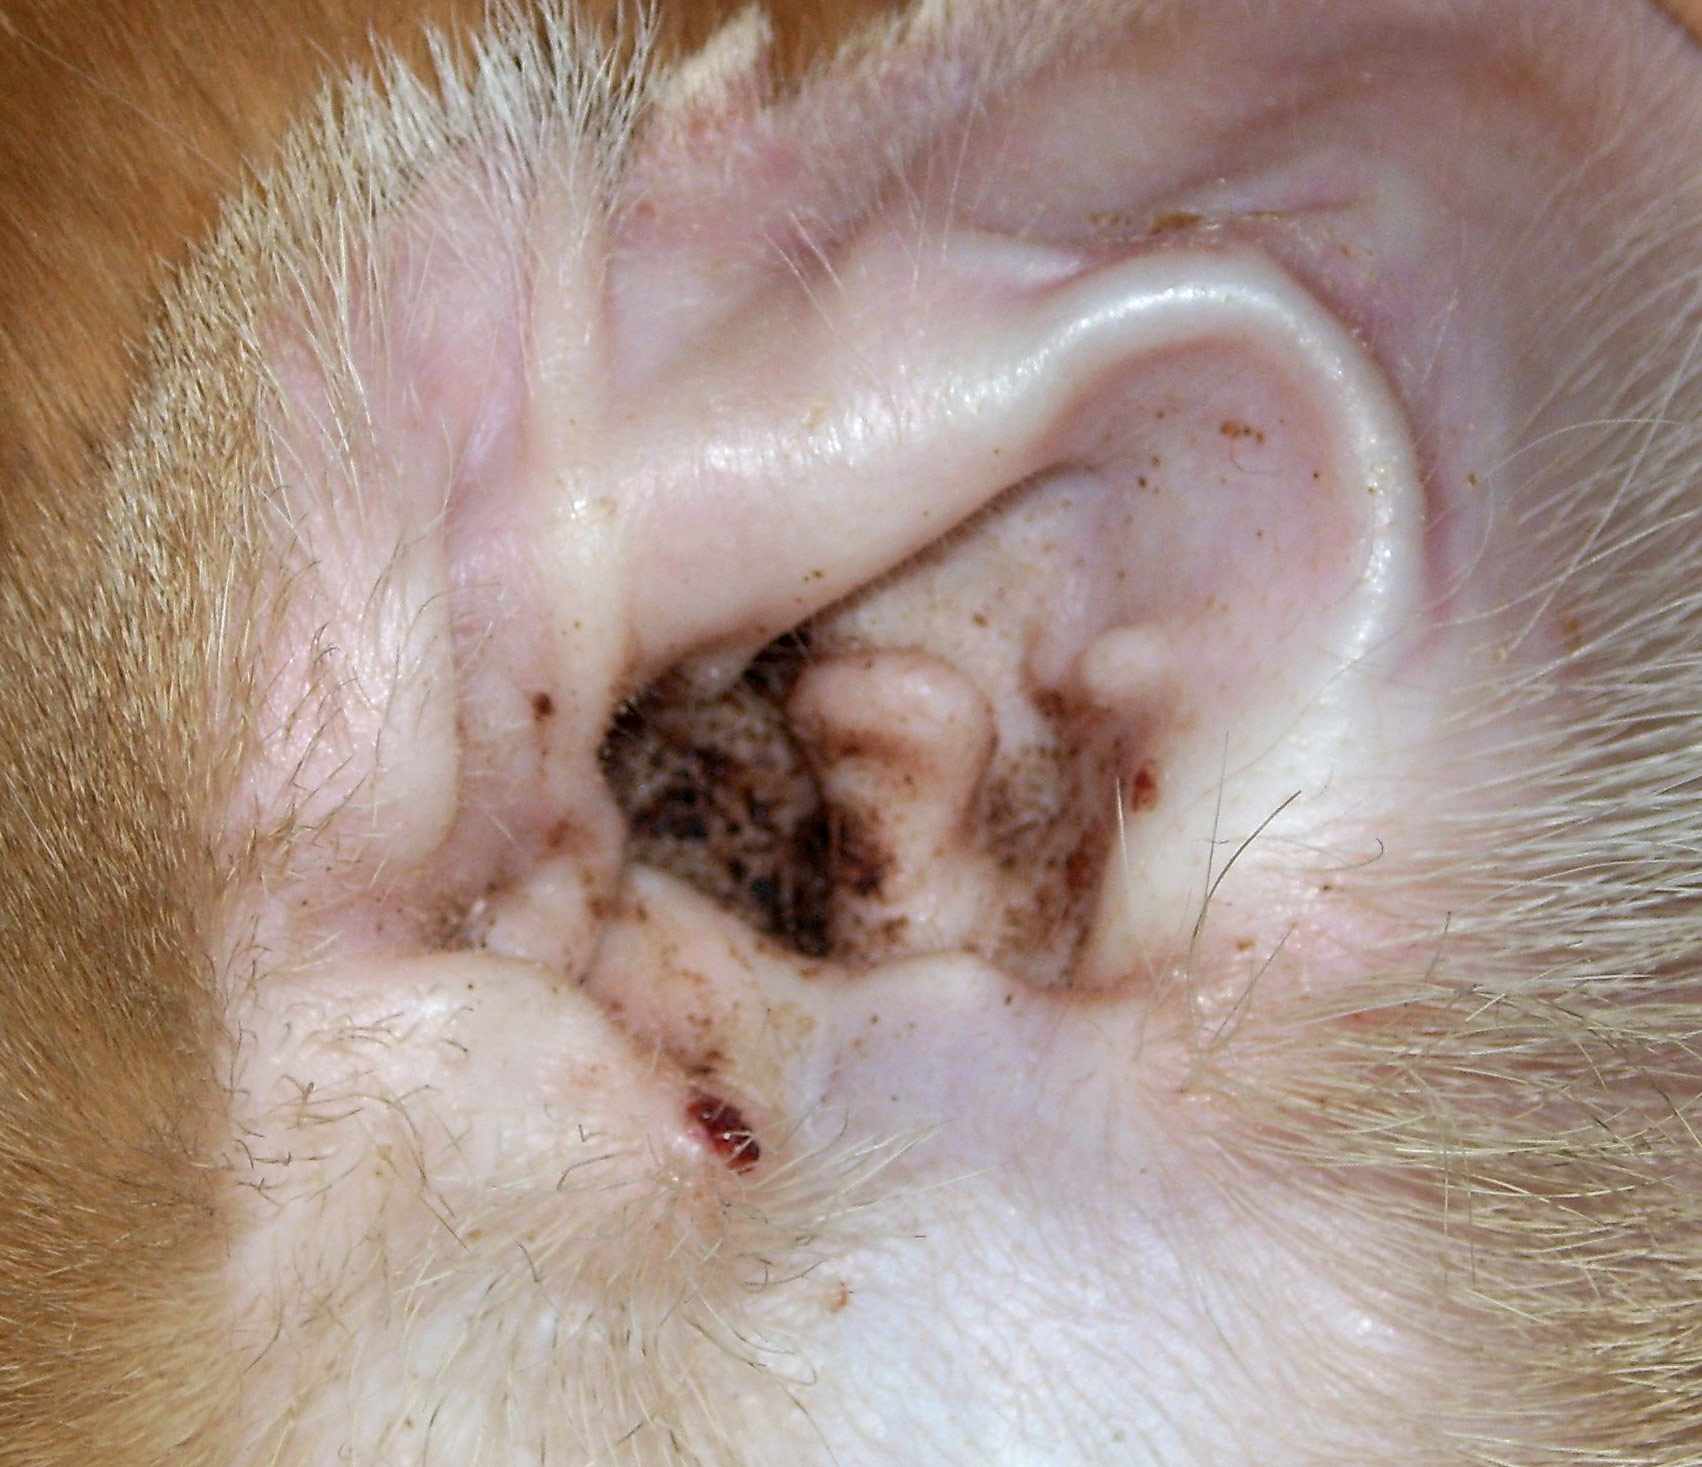 Ear Mite debris in a cat ear